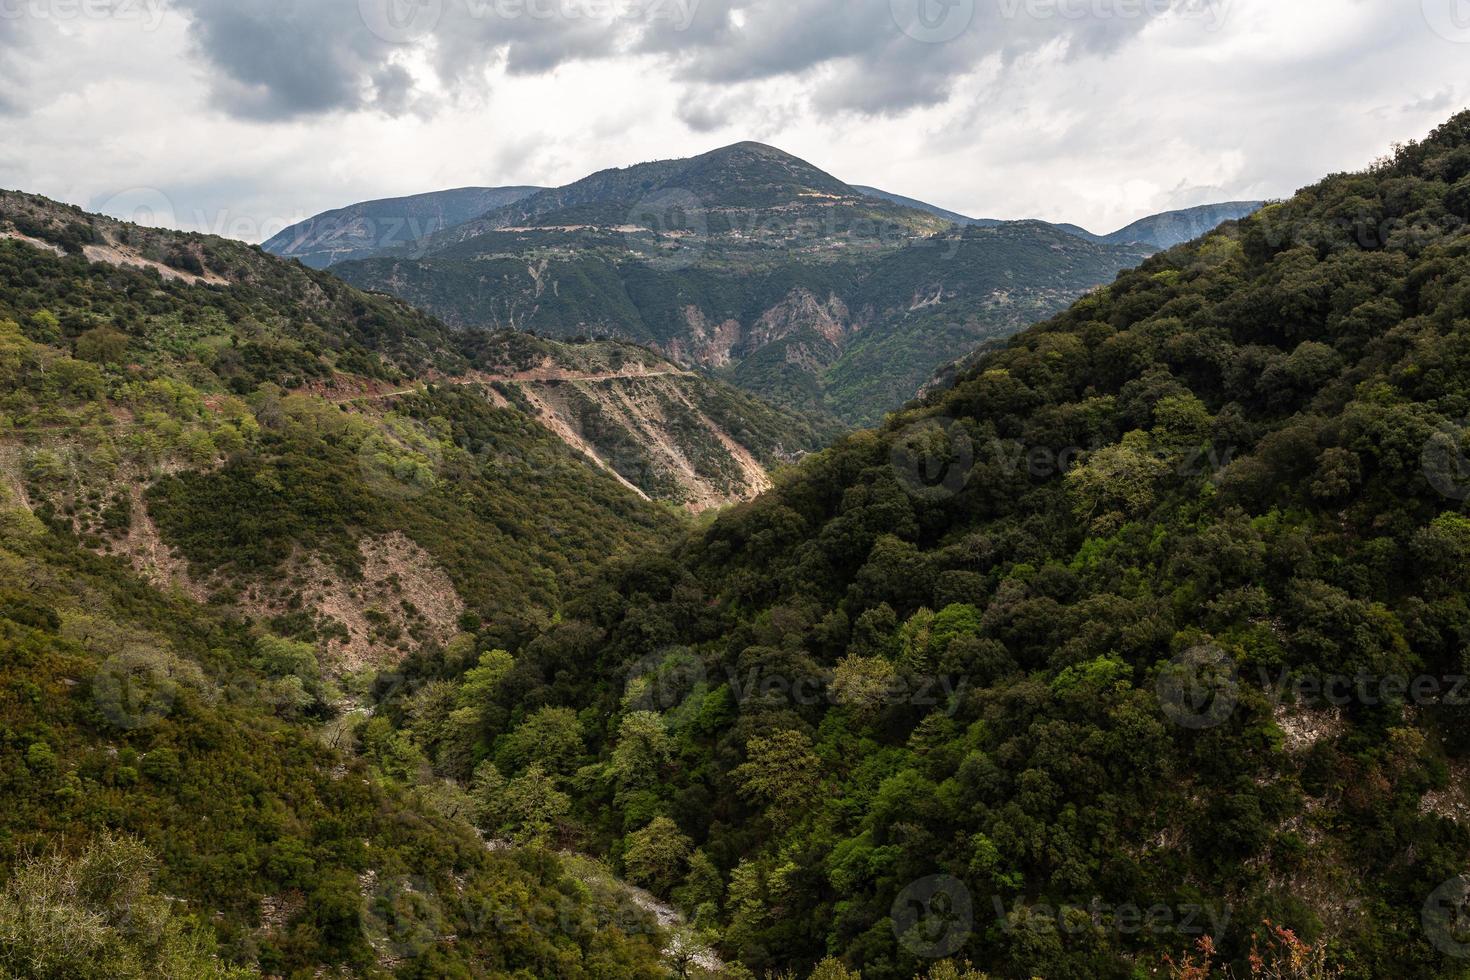 vår landskap från de bergen av grekland foto